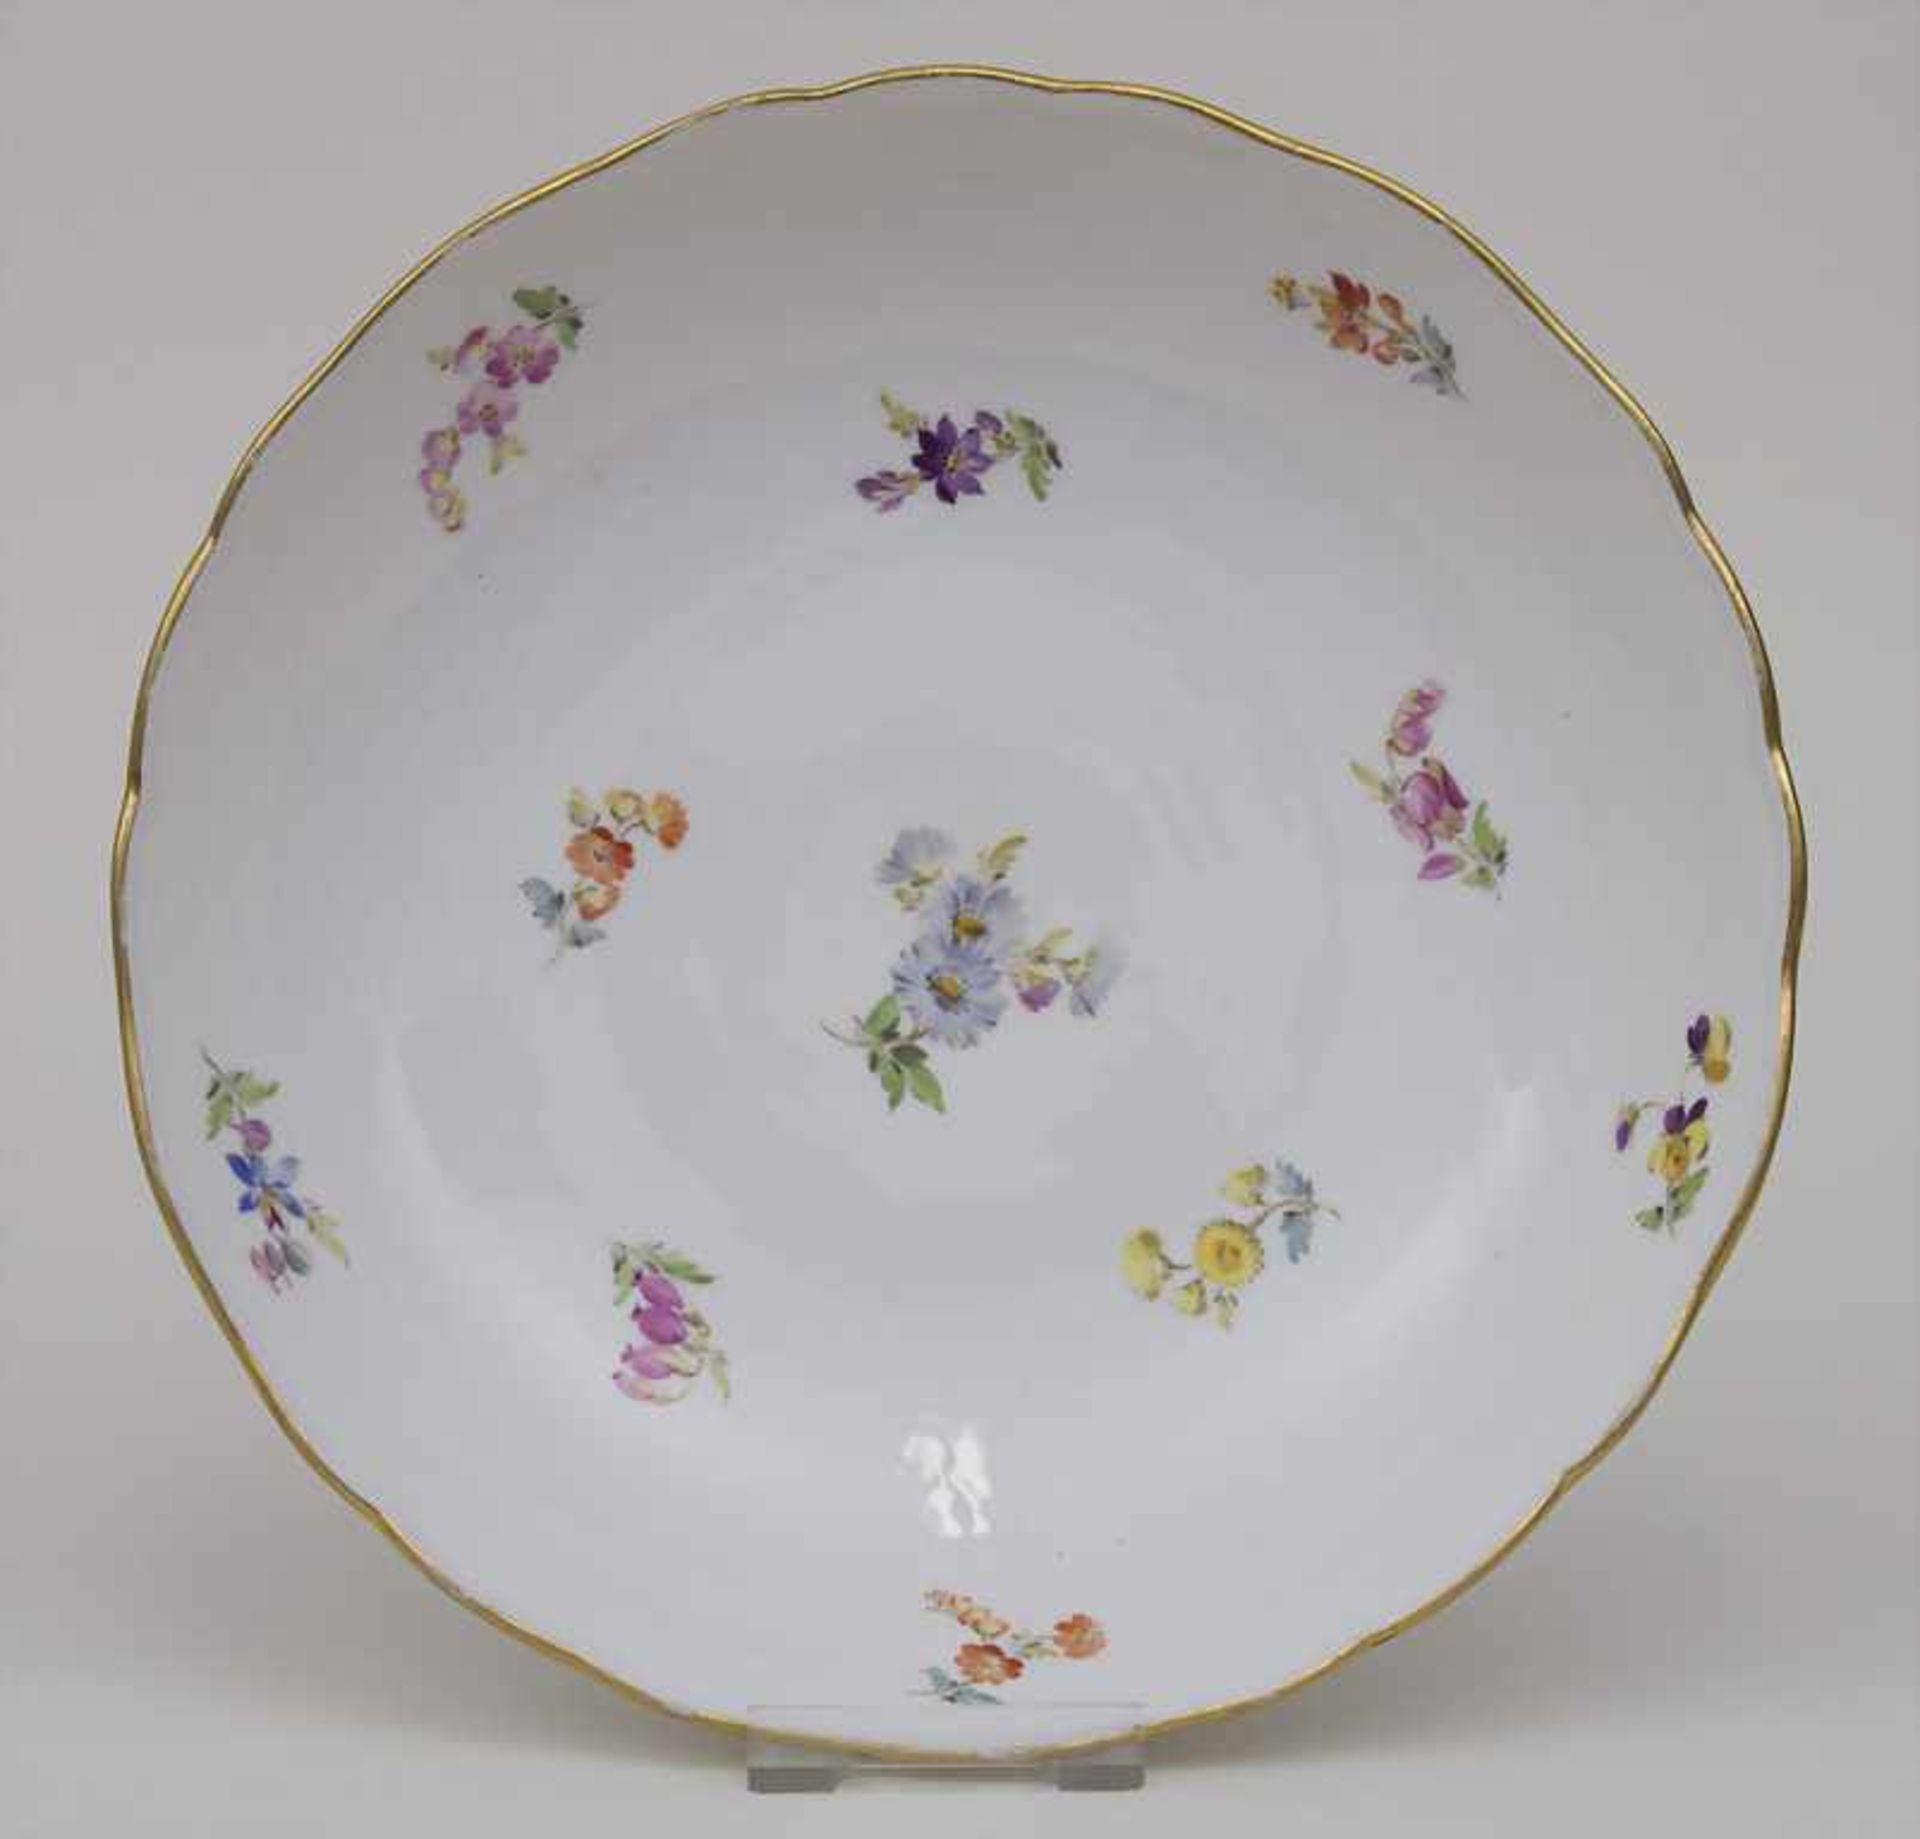 Obstschale mit Streublumen / A fruit bowl with scattered flowers, Meissen, um 1880 Material: